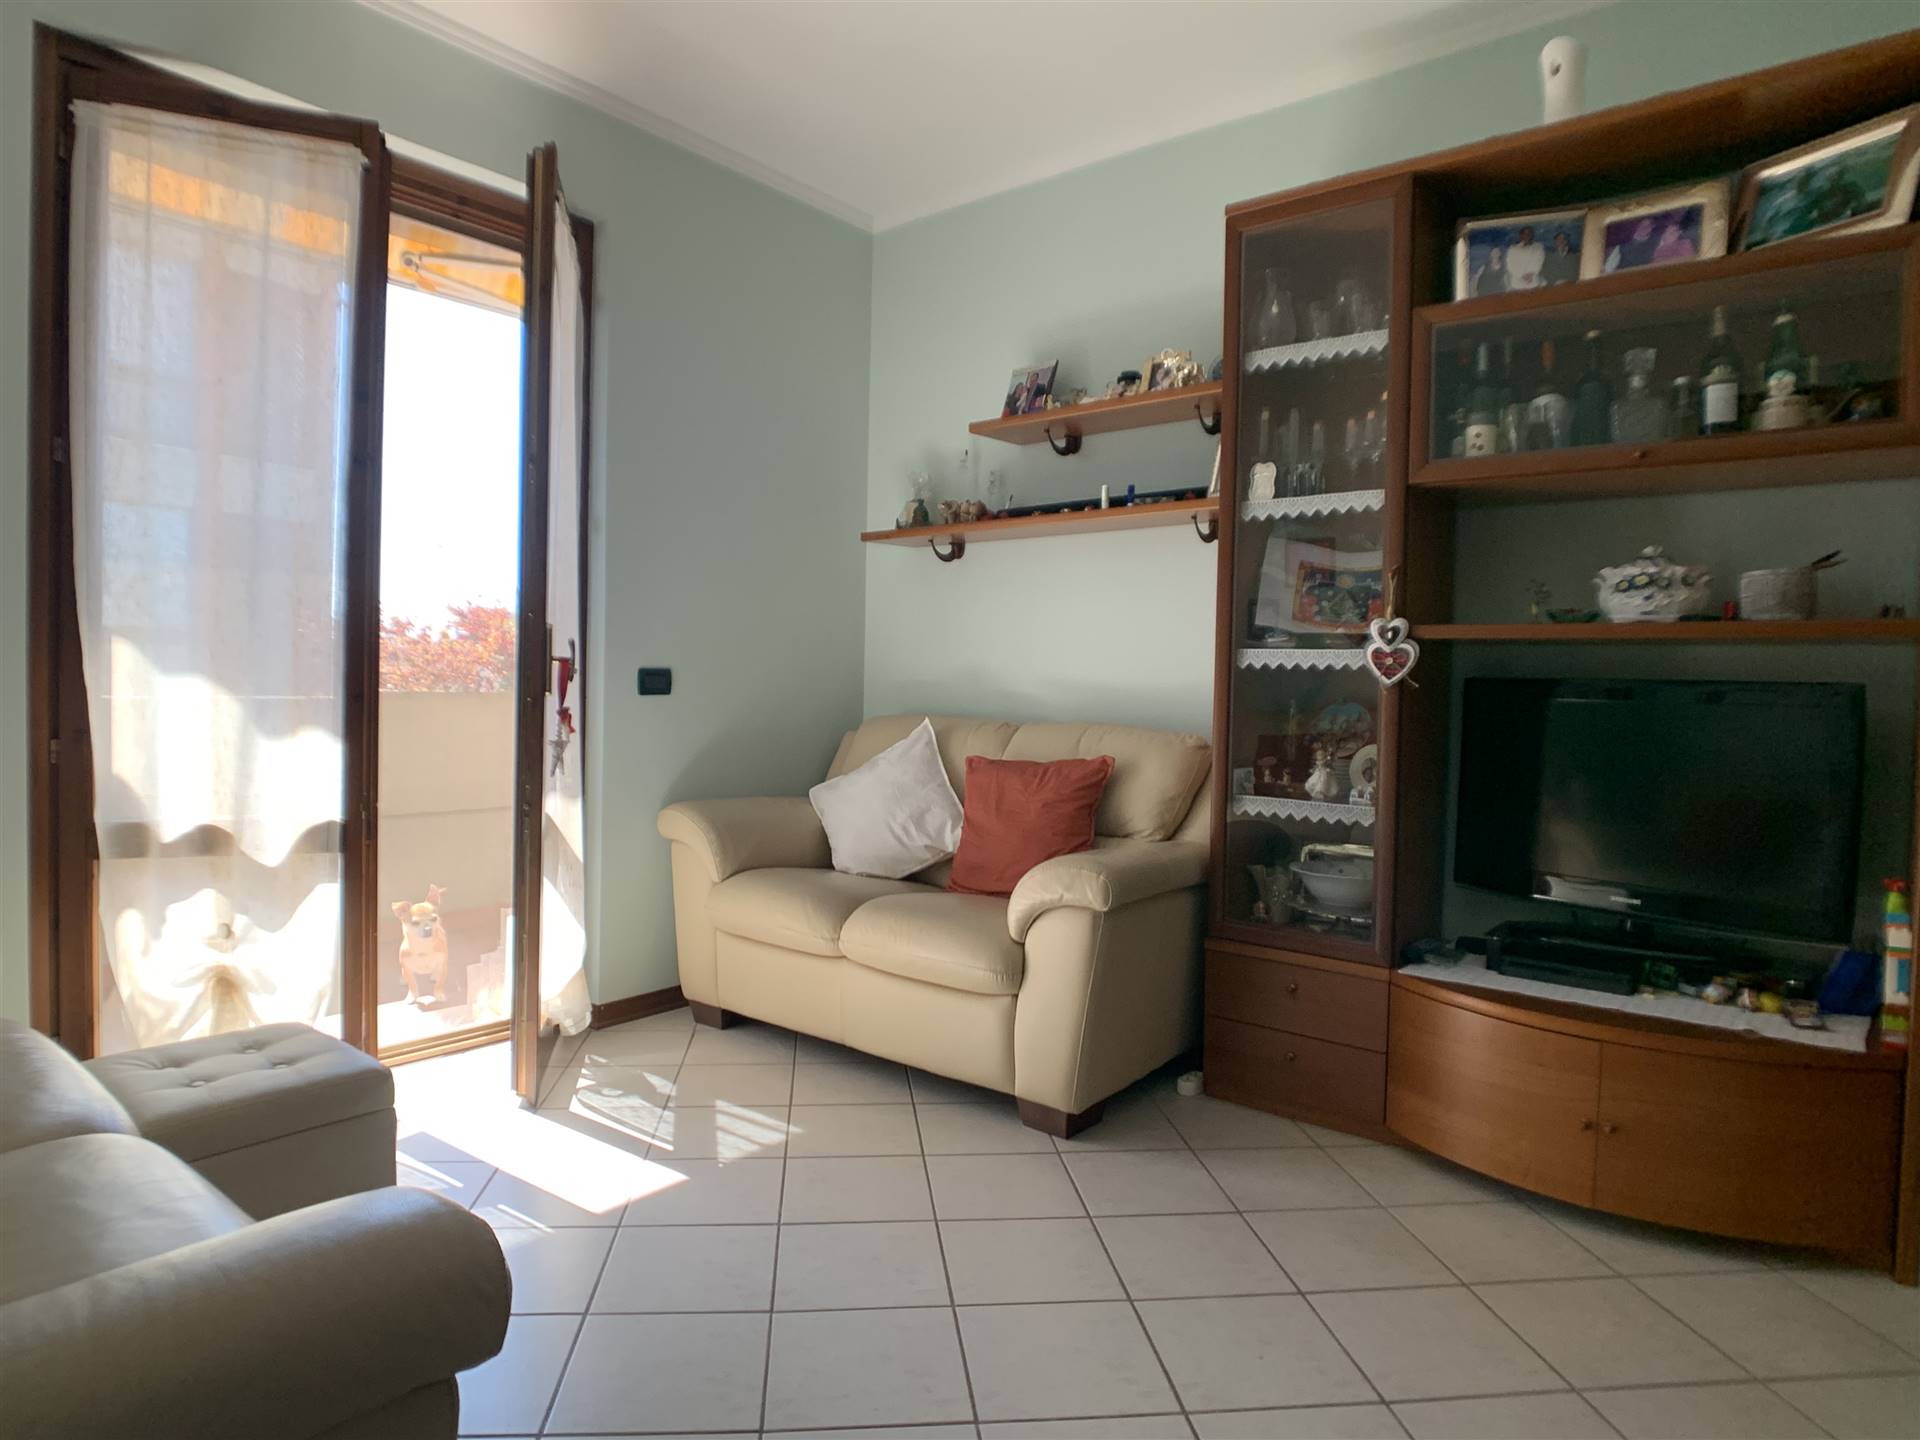 Appartamento in vendita a Pieve a Nievole, 6 locali, zona lto Via Nova, prezzo € 118.000 | PortaleAgenzieImmobiliari.it